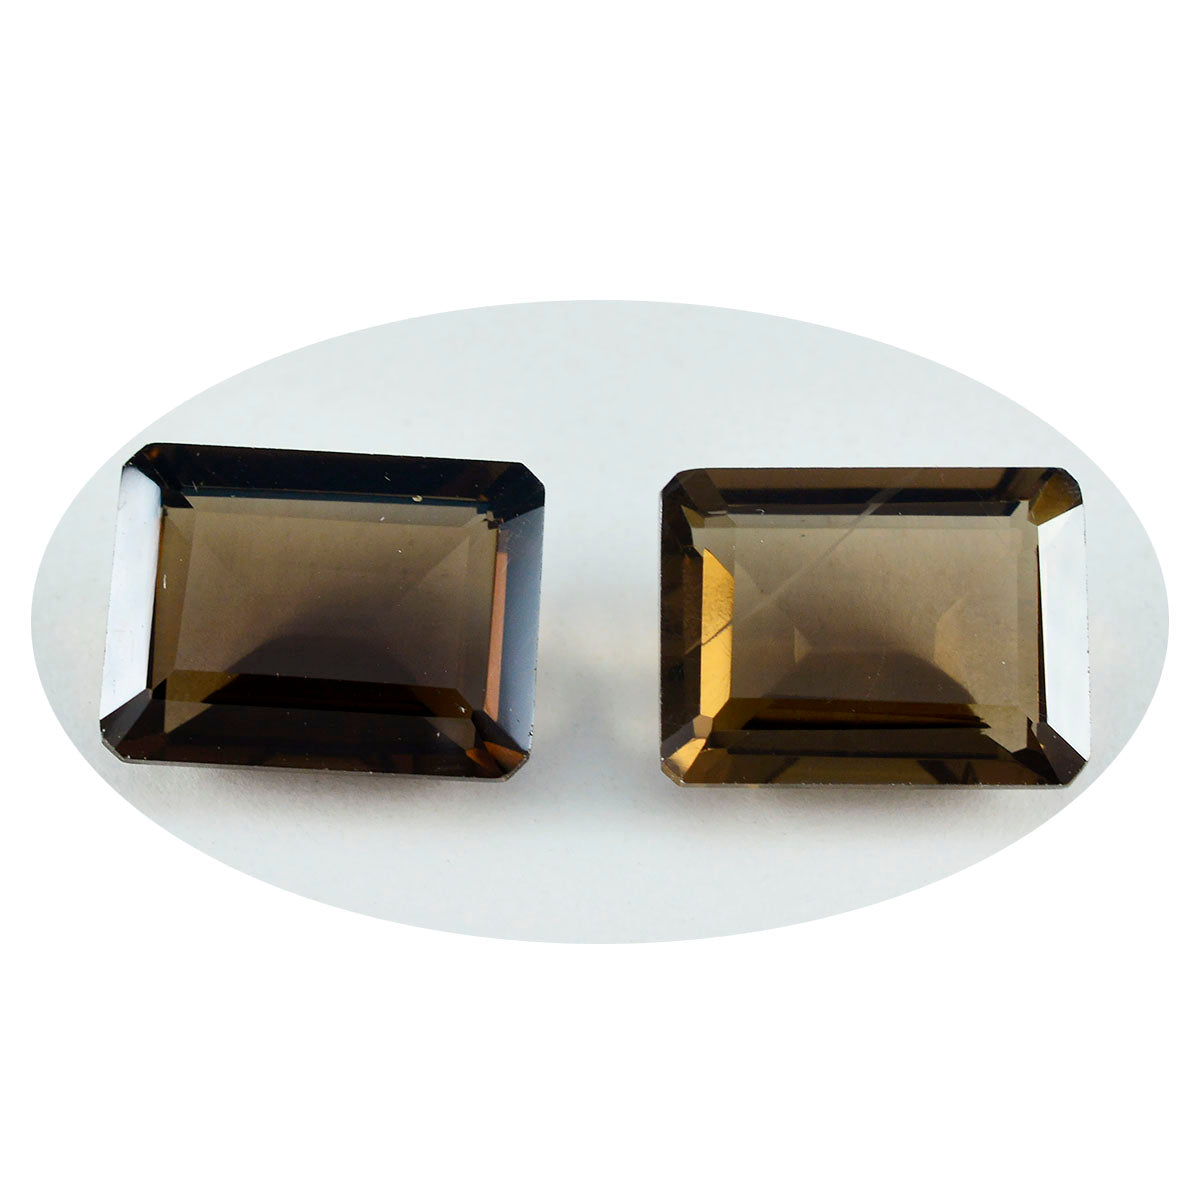 Riyogems, 1 pieza, cuarzo ahumado marrón auténtico facetado, 10x12mm, forma octágono, piedra suelta de excelente calidad